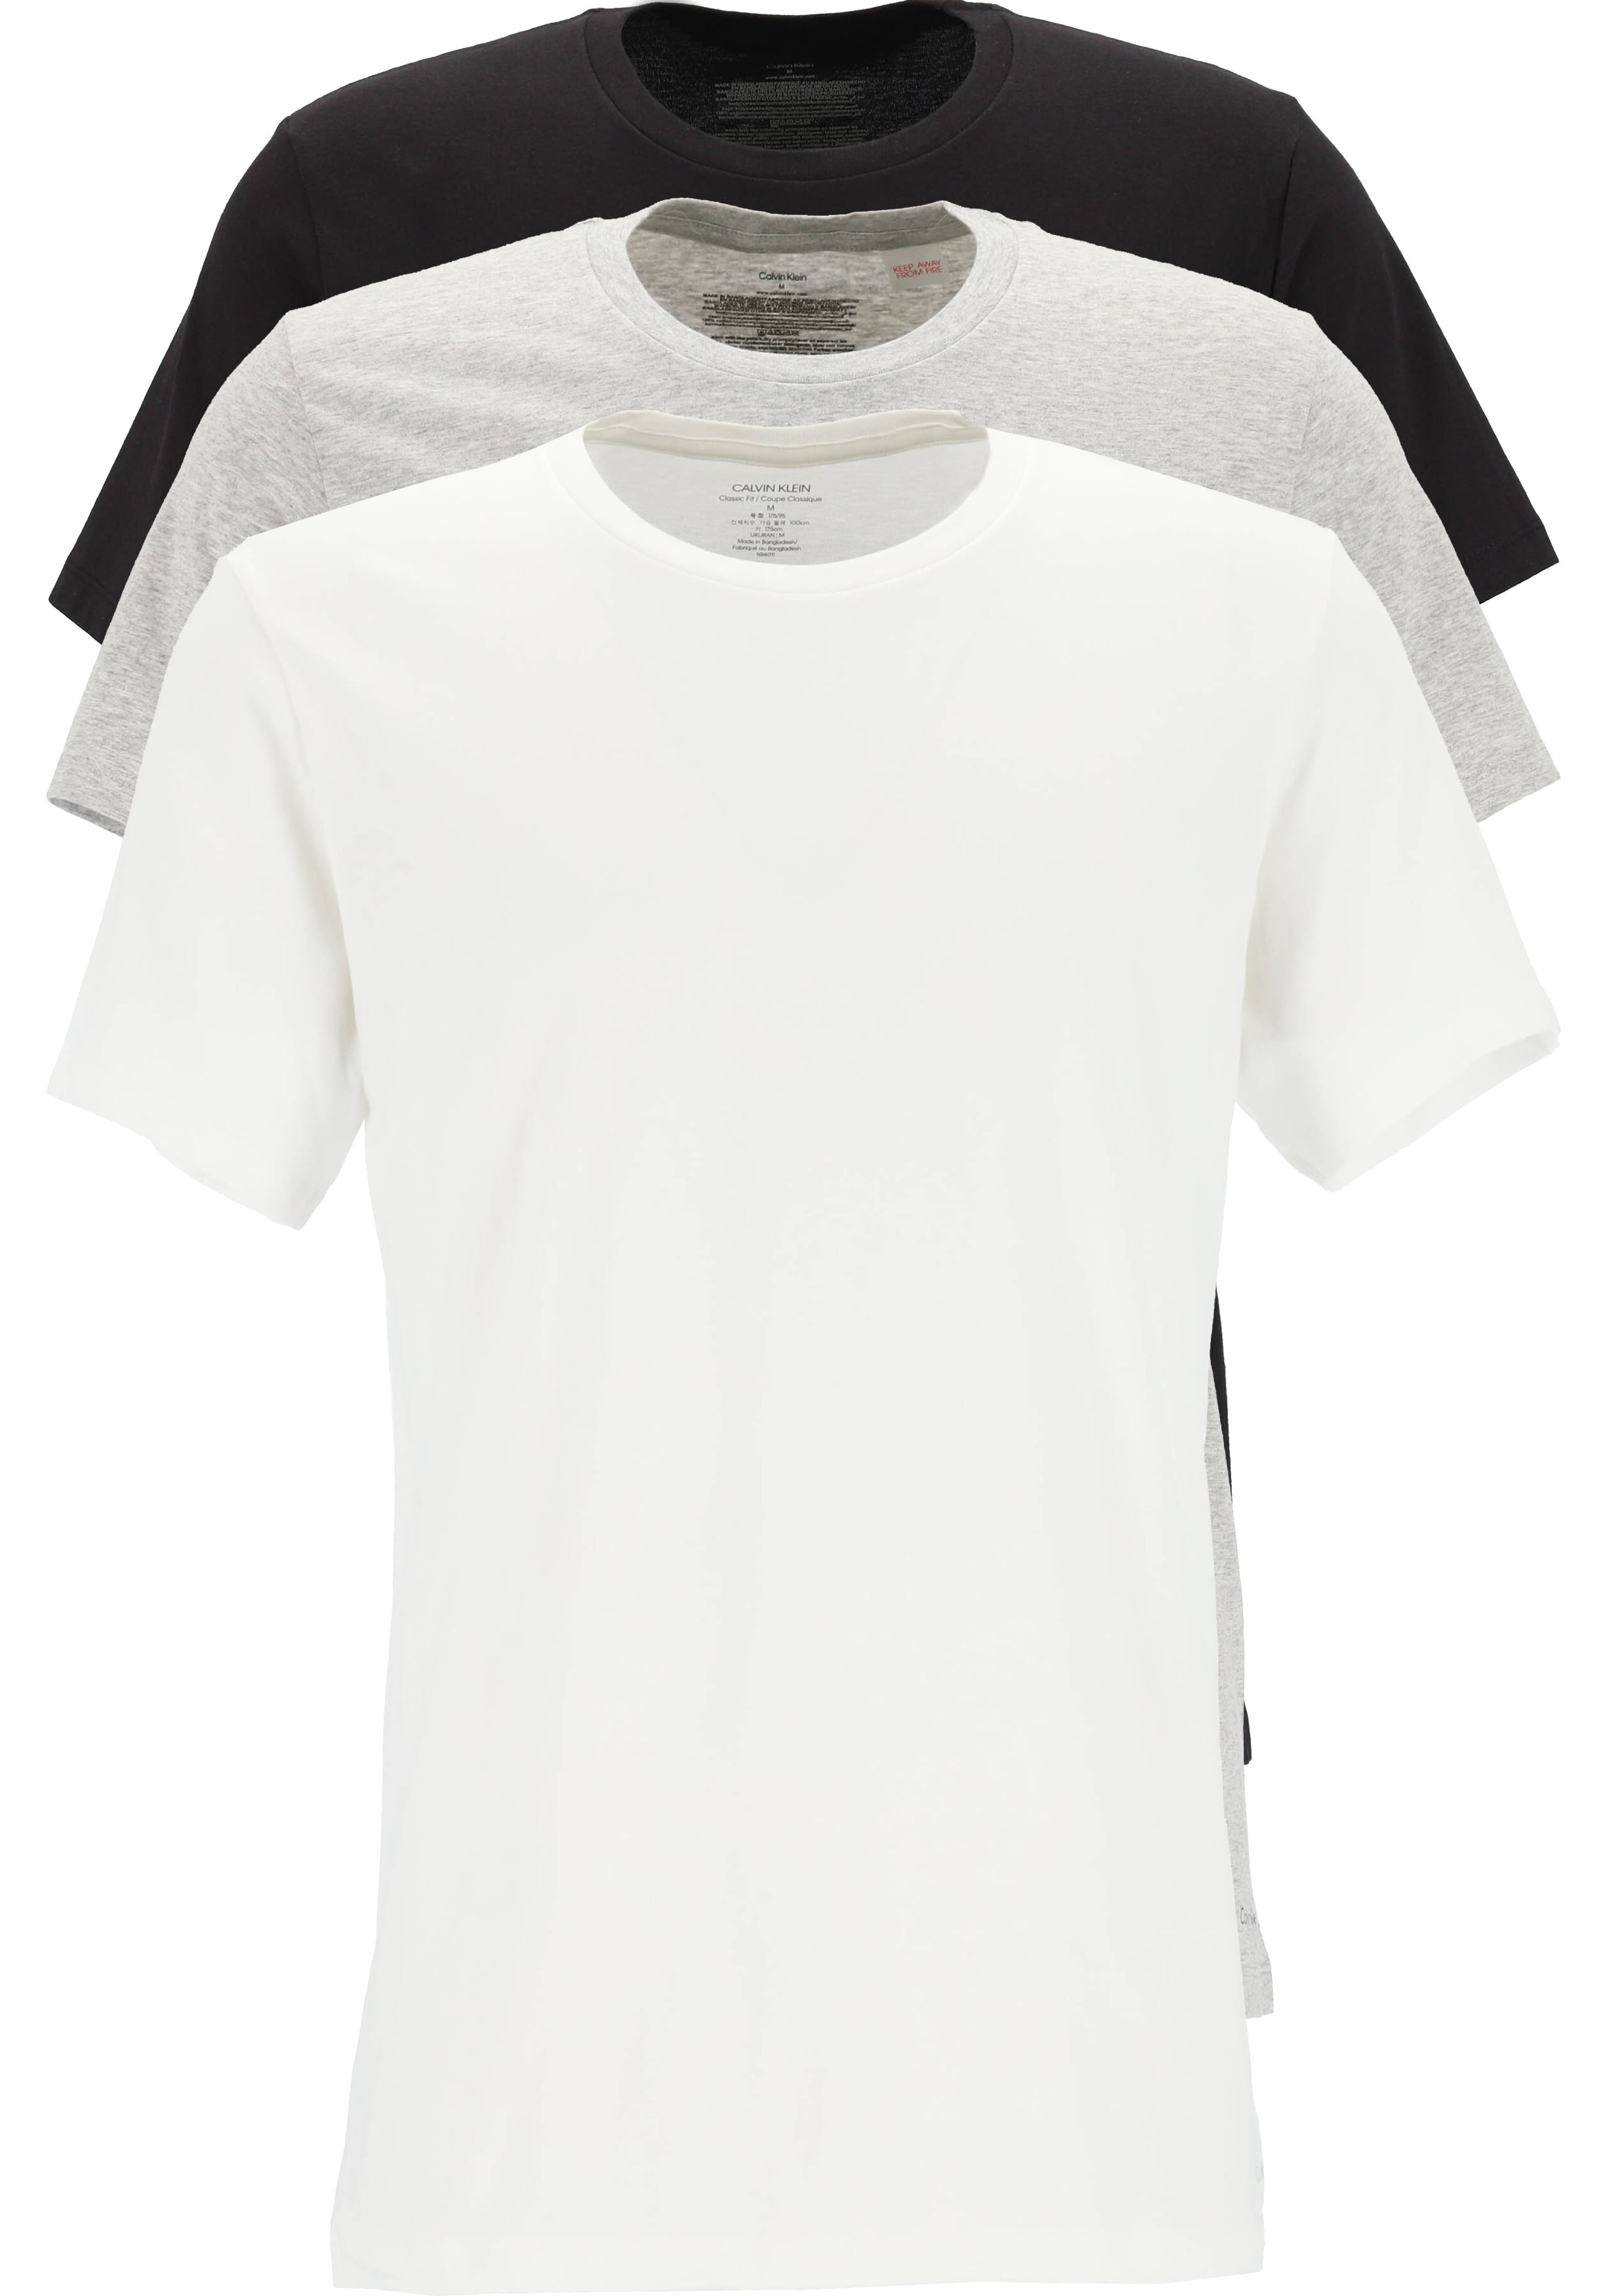 puberteit Baron Verlengen Calvin Klein Cotton Classics crew neck T-shirt (3-pack), heren T-shirts...  - Shop de nieuwste voorjaarsmode